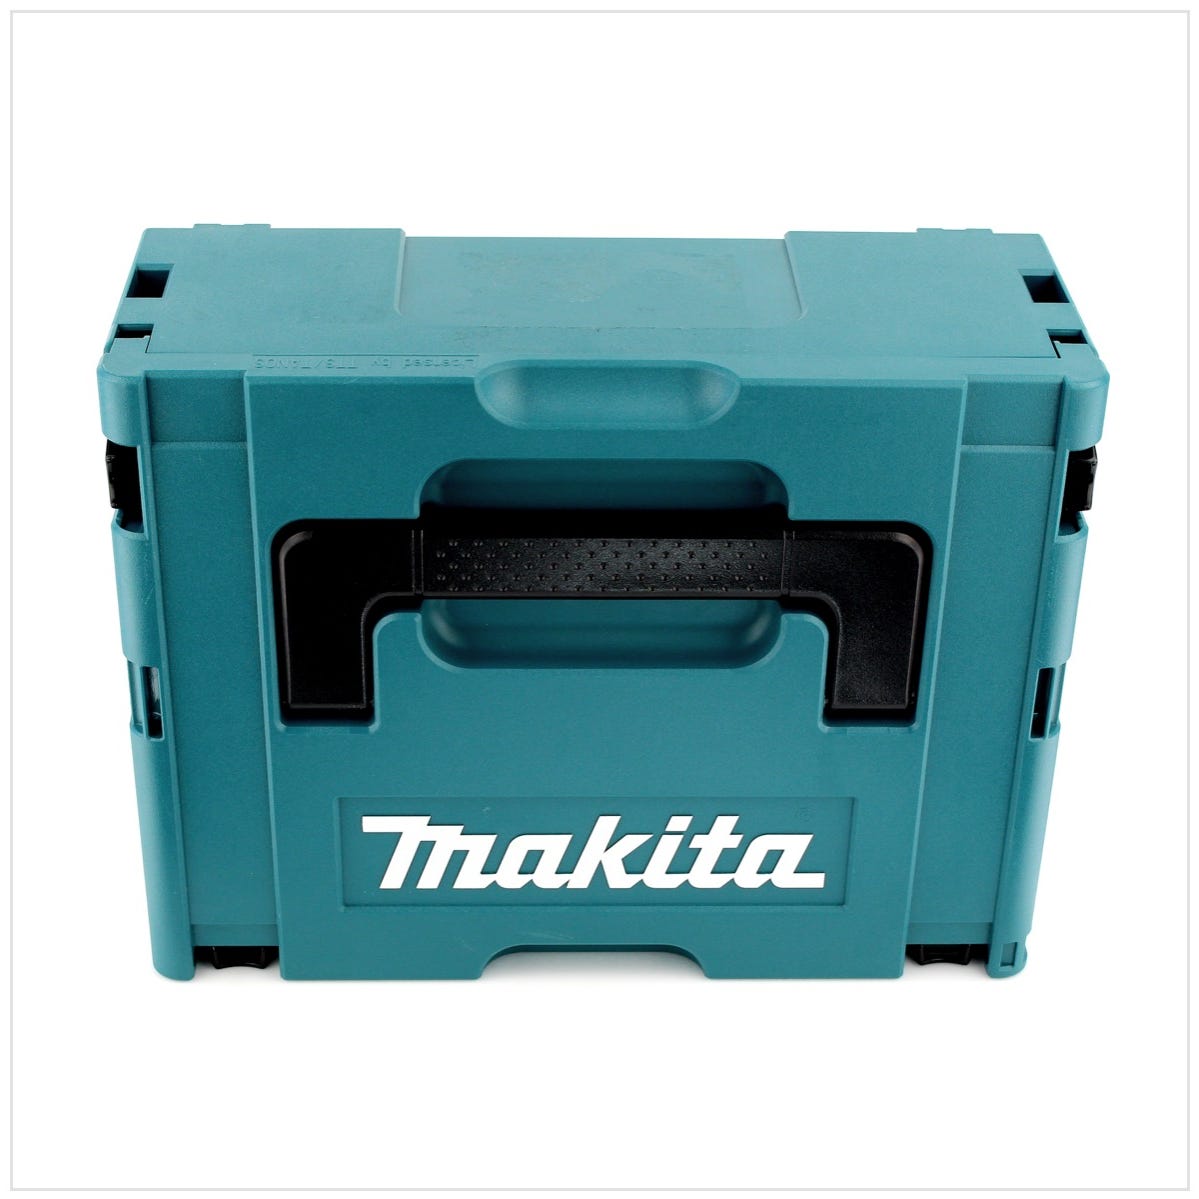 Makita DTW 285 Y1J-D 18 V Li-Ion Boulonneuse à chocs sans fil avec boîtier Makpac 2 + 1x Batterie BL 1820 2,0 Ah + Chargeur rapide DC 18 RC 2